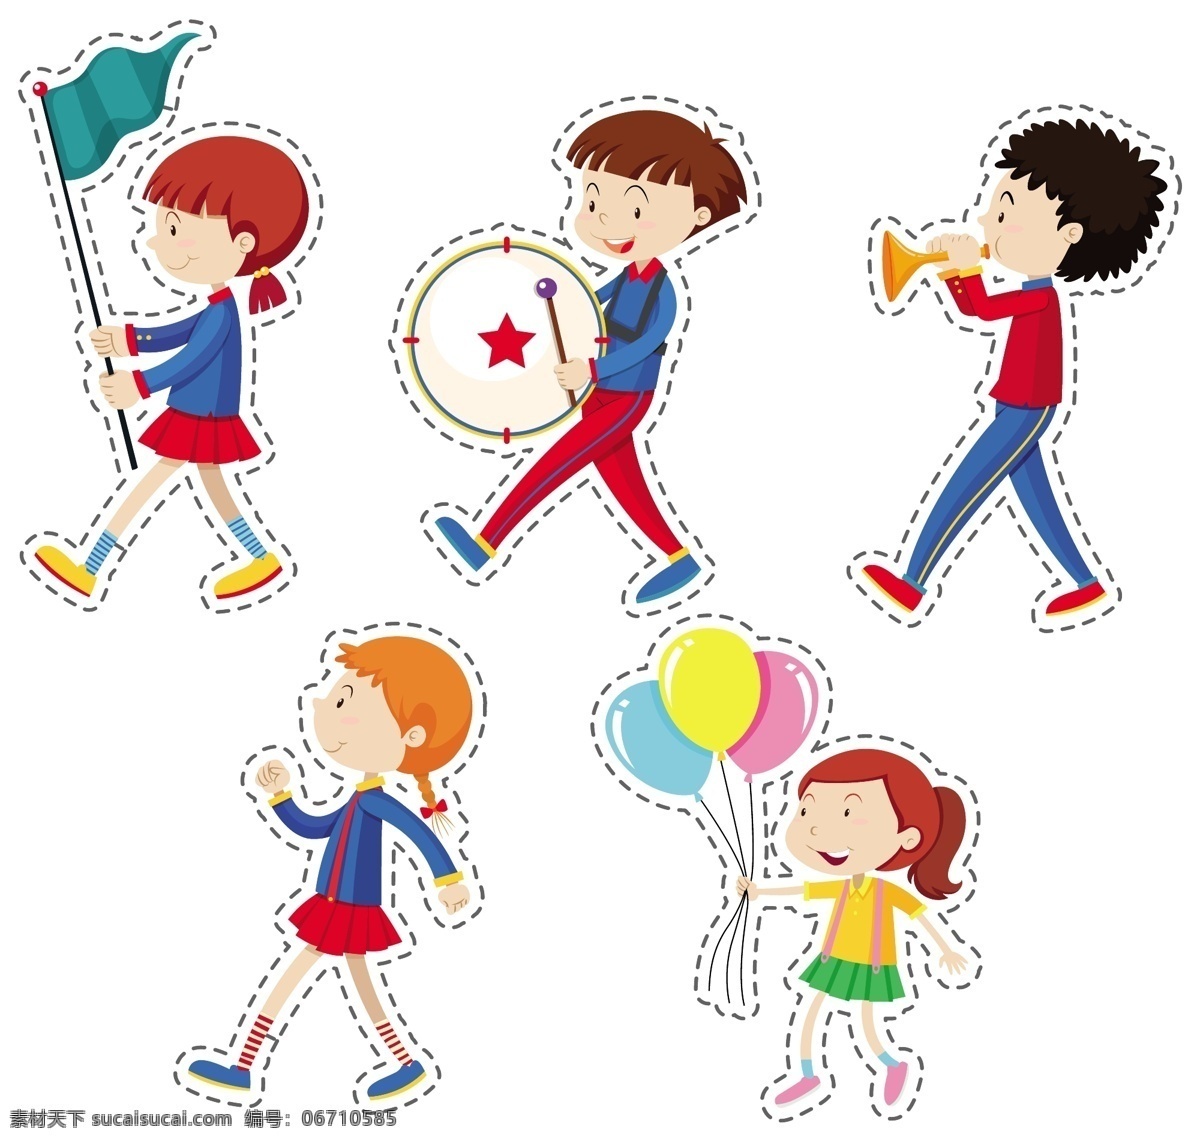 卡通儿童 快乐儿童 节日 开心 儿童素材 男孩 女孩 人物 儿童节 学生 小学生 鼓手 卡通设计